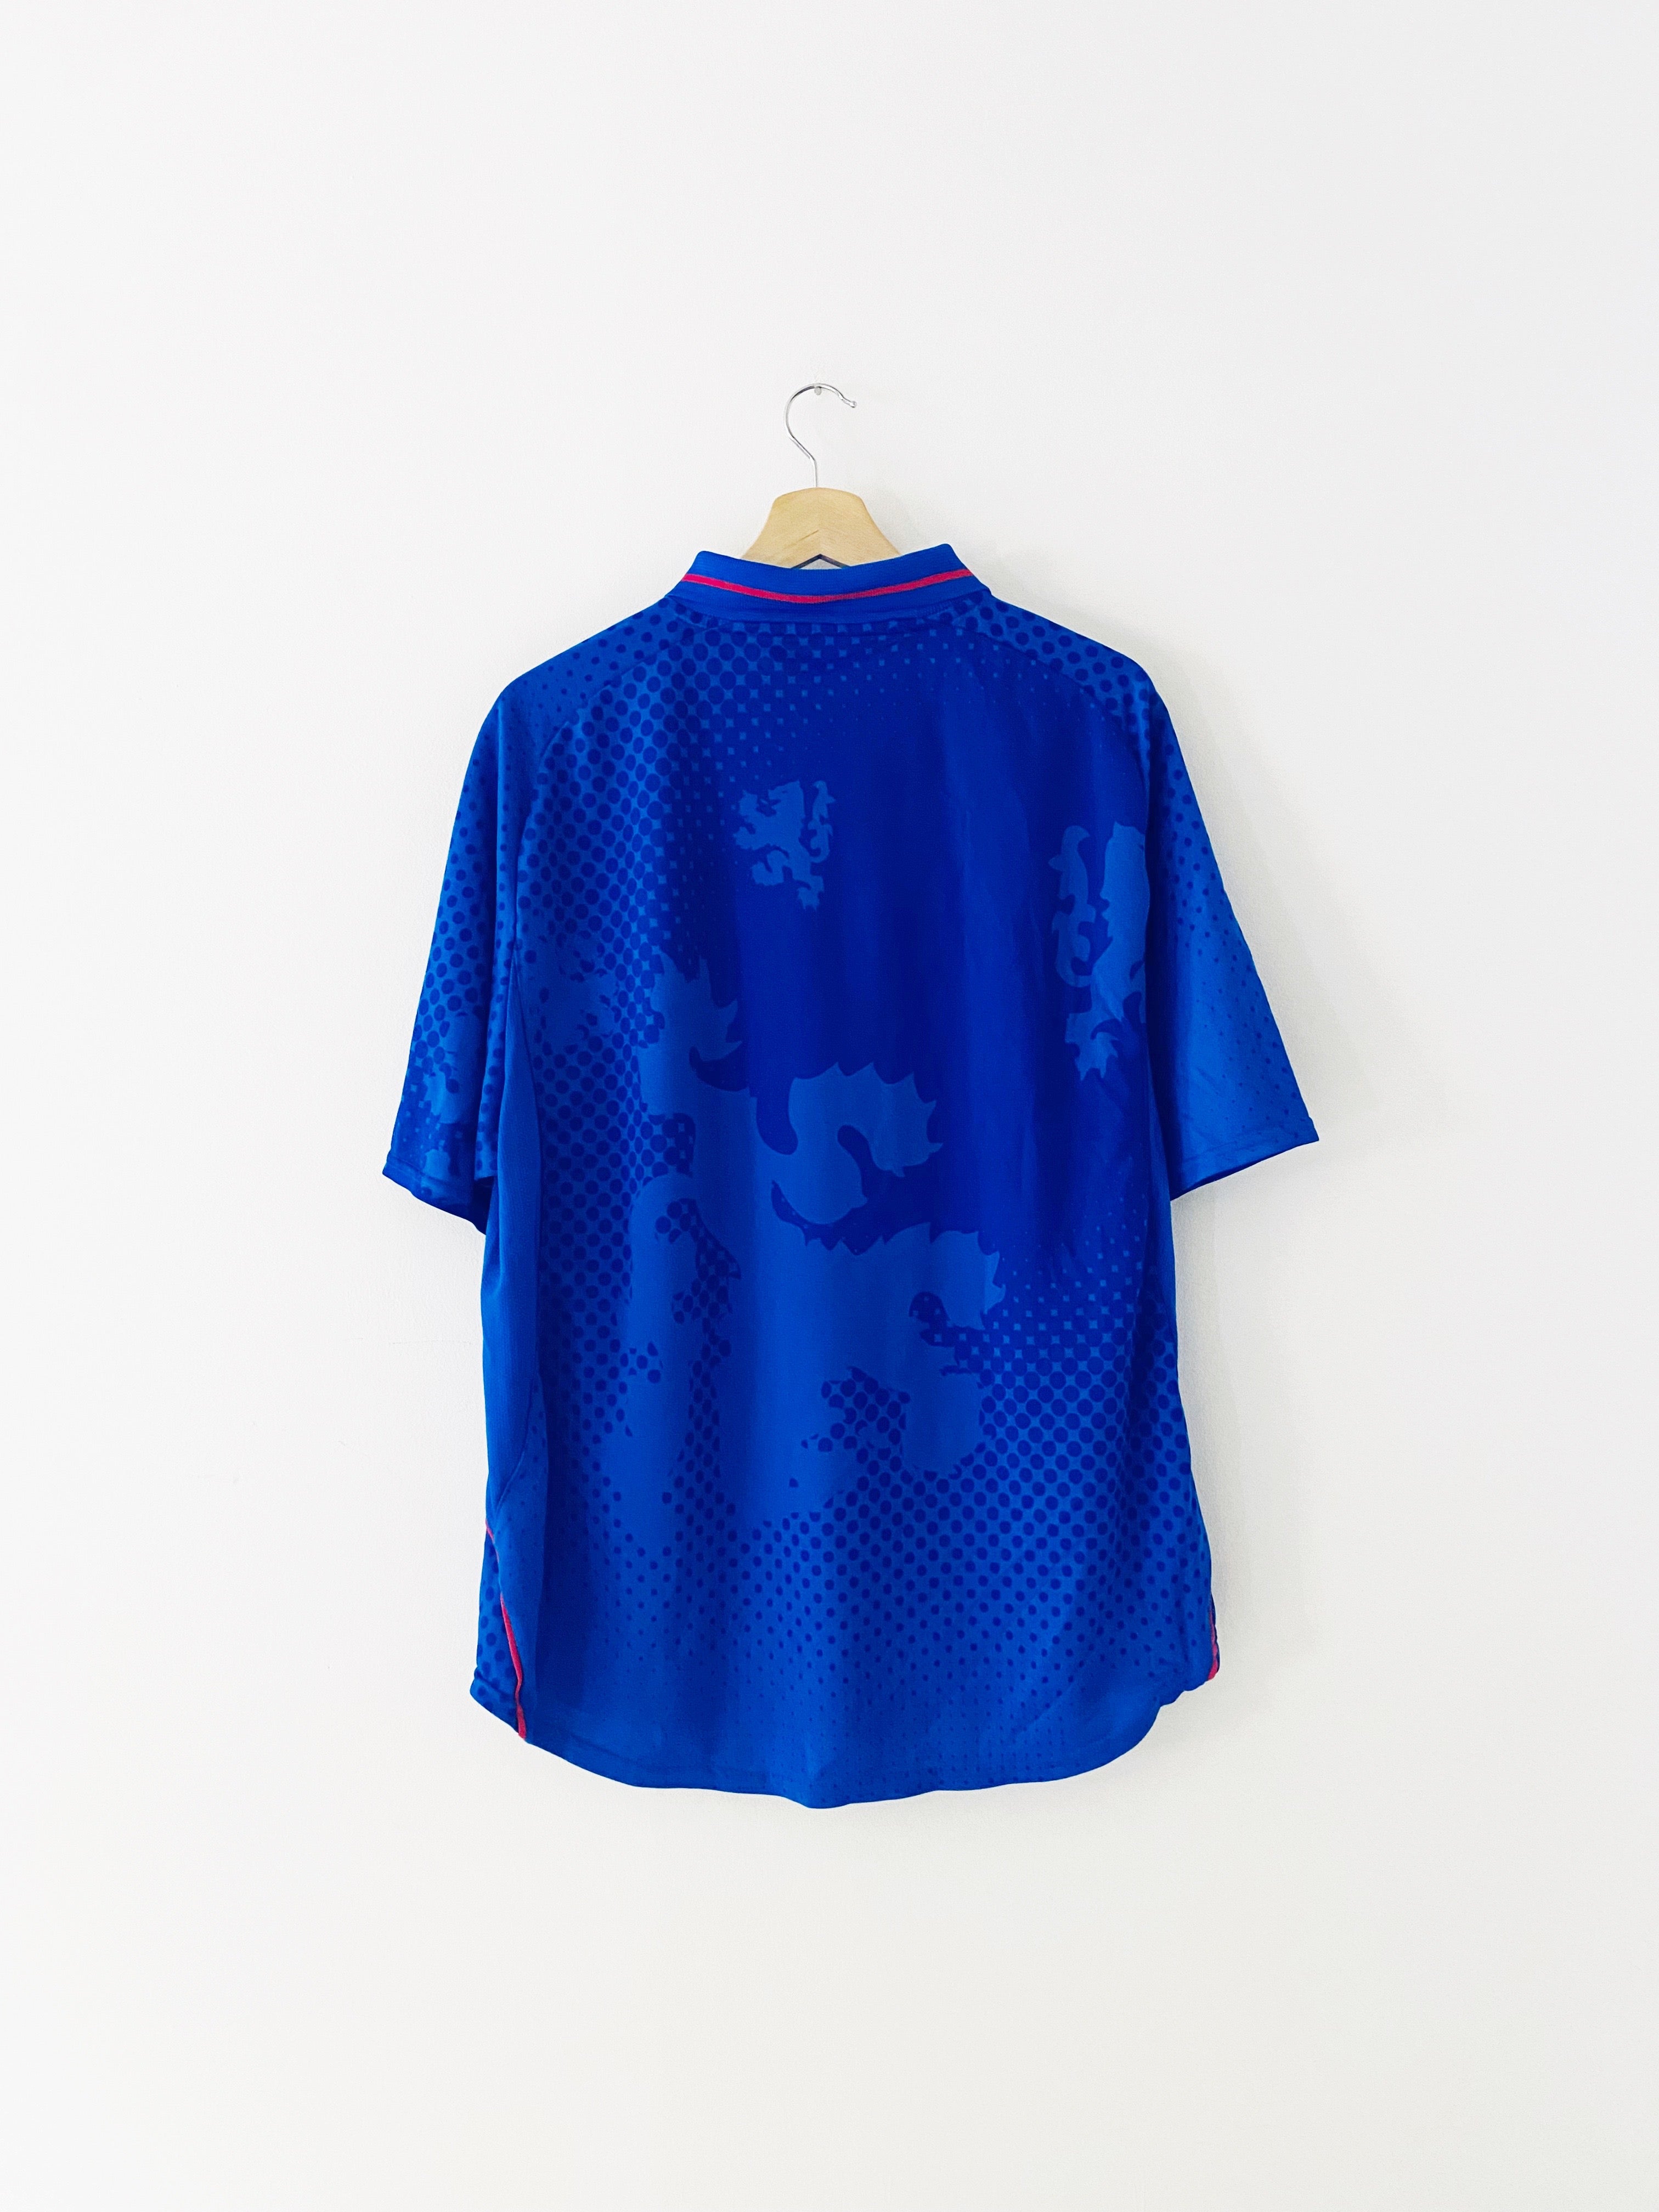 2002/03 Rangers Home Shirt (XL) 7/10